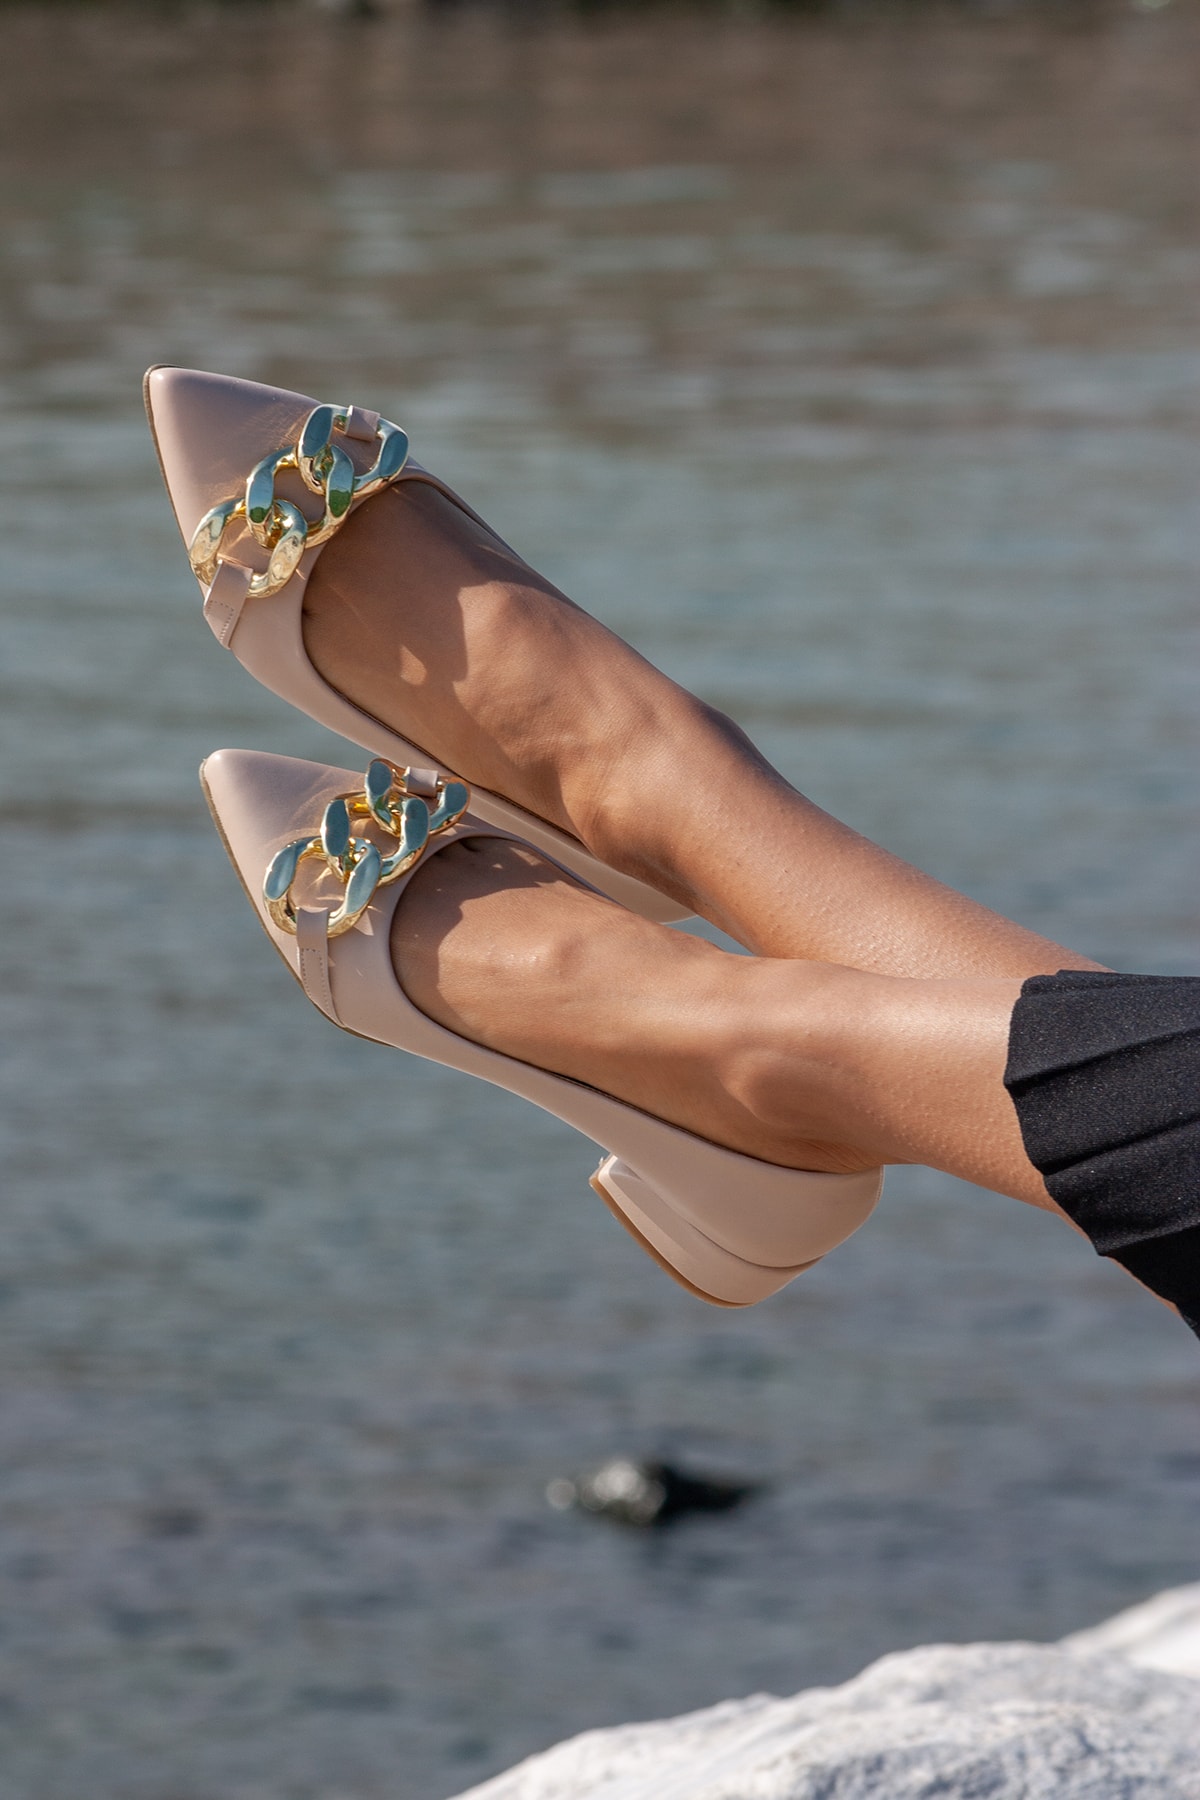 FORS SHOES Kadın Bej Cilt Zincir Tokalı Topuklu Ayakkabı 3.5 Cm